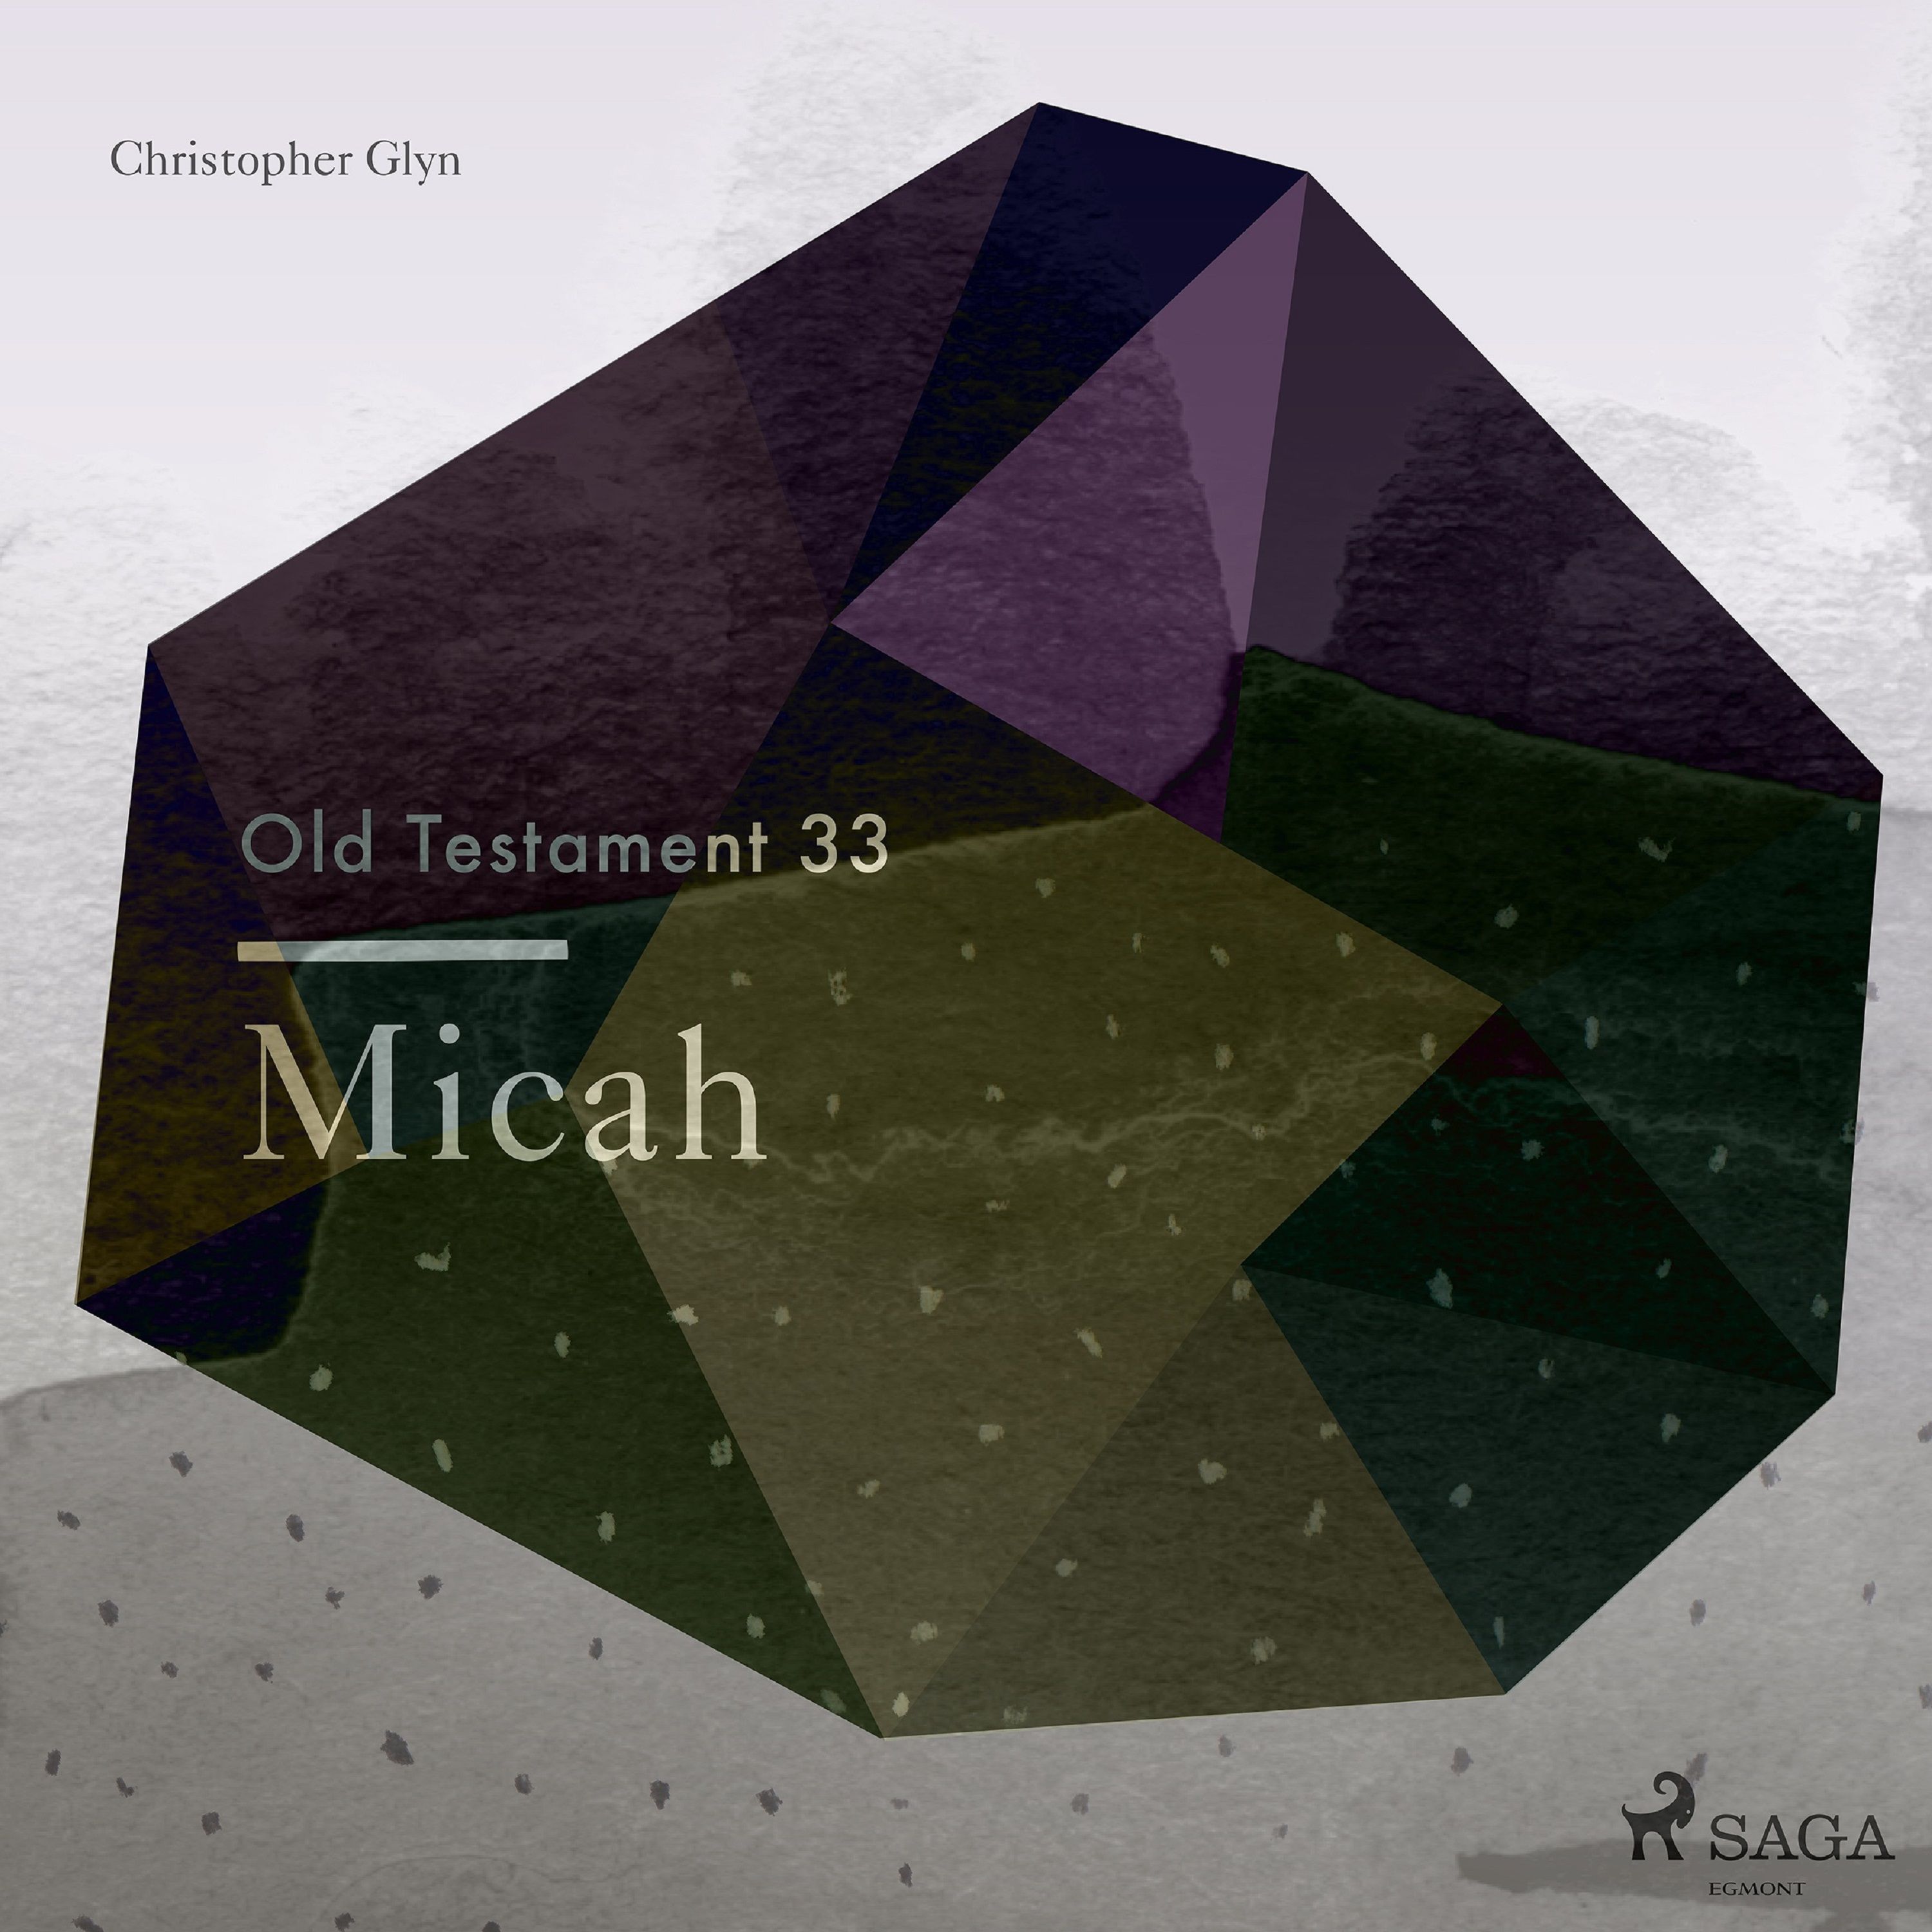 The Old Testament 33 - Micah, ljudbok av Christopher Glyn